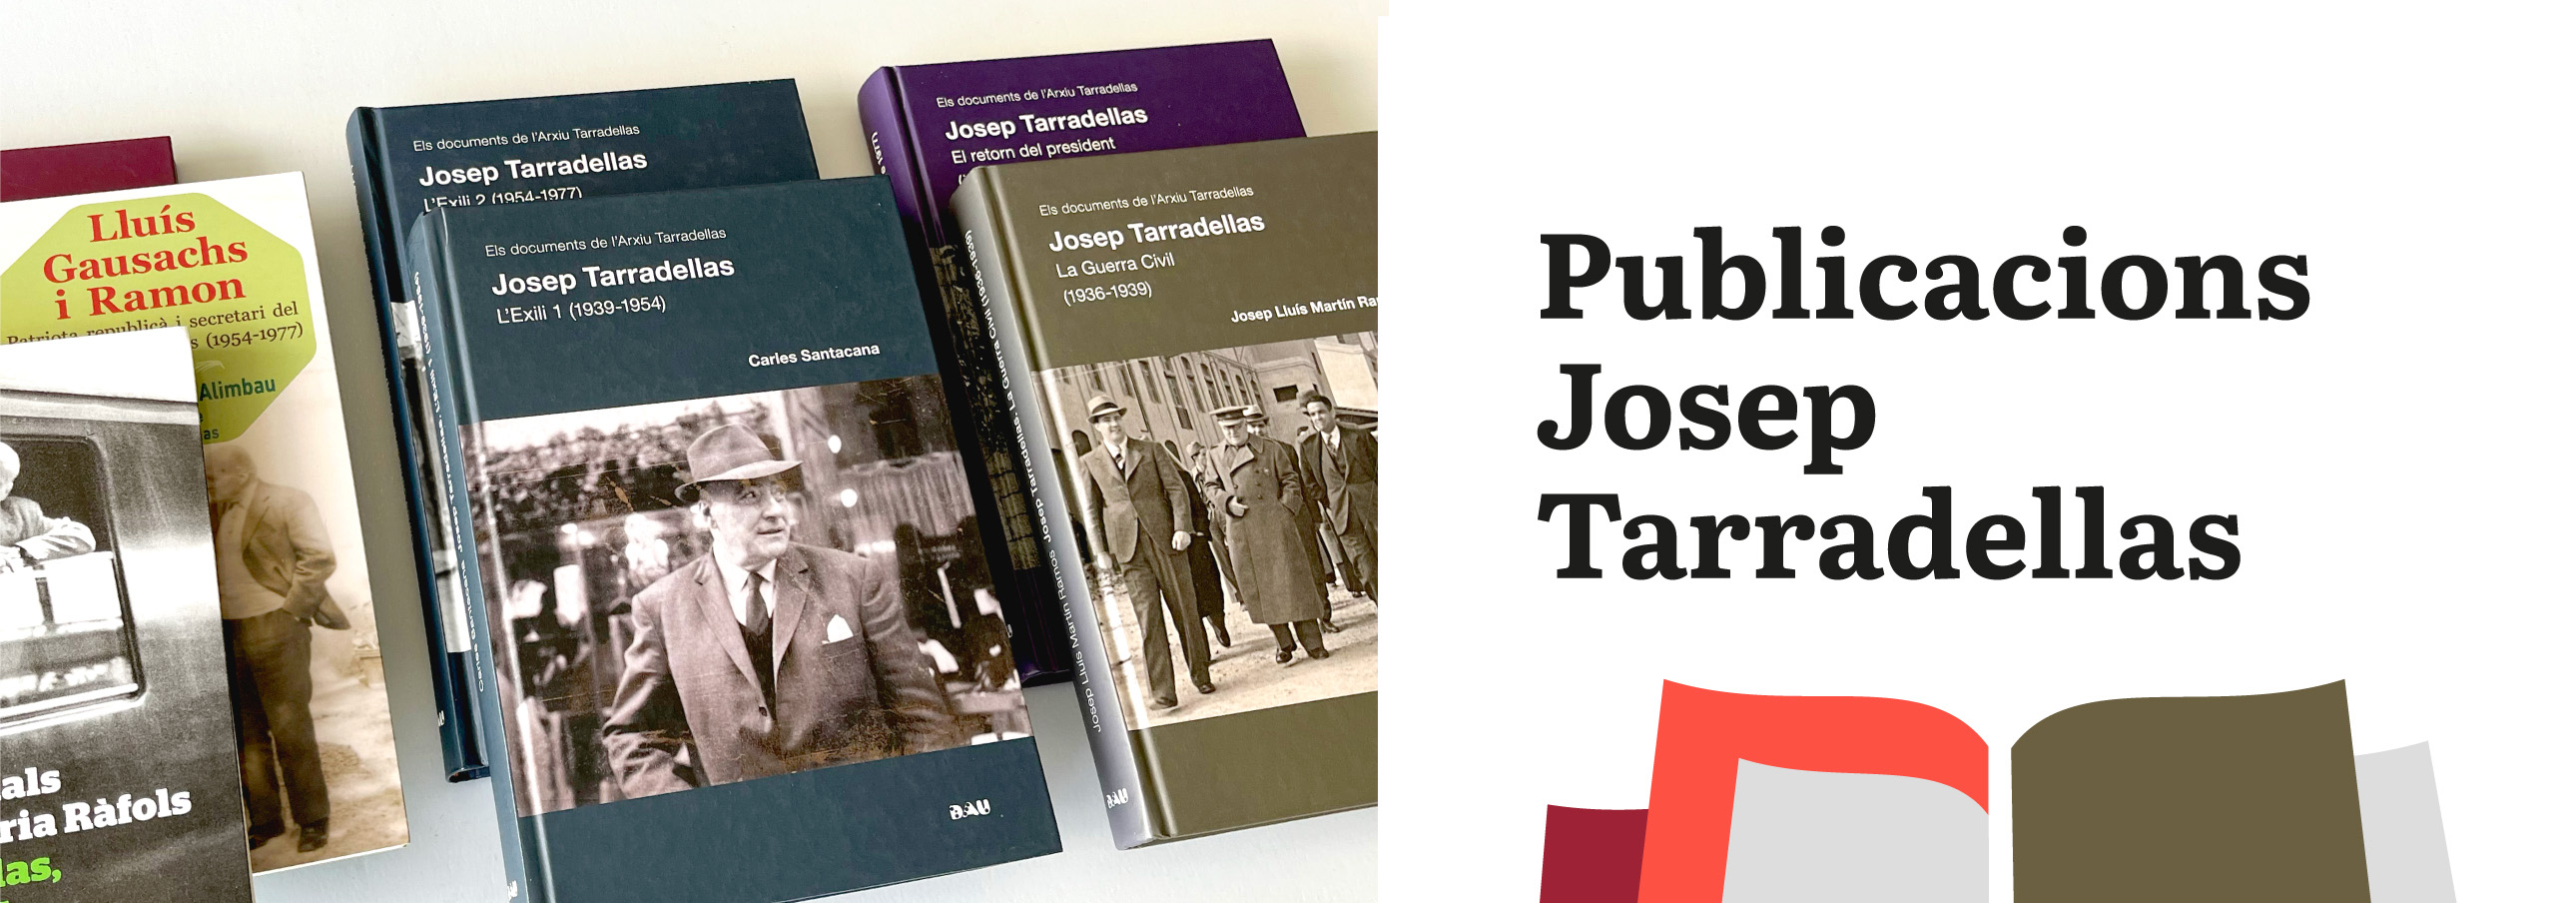 Llibres de Josep Tarradellas